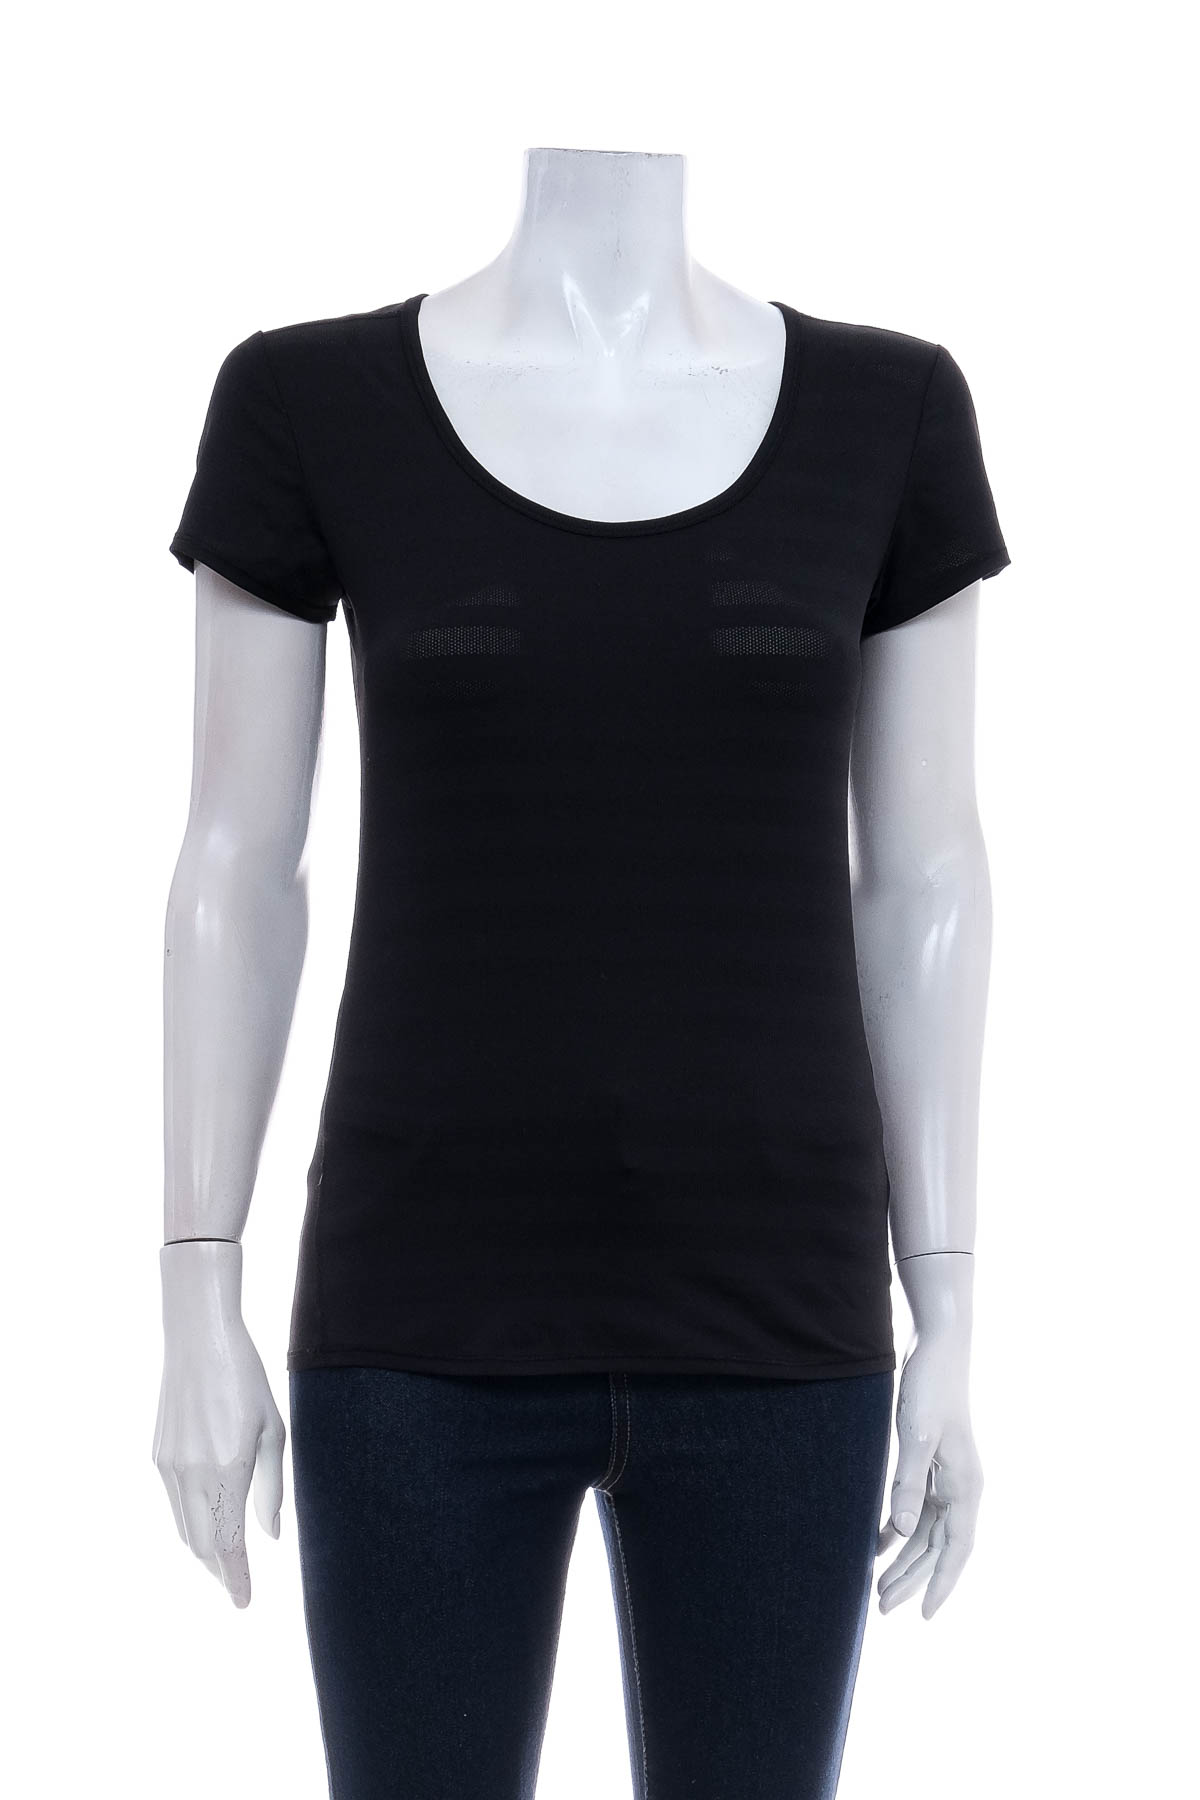 Women's t-shirt - 90 DEGREE BY REFLEX - 0